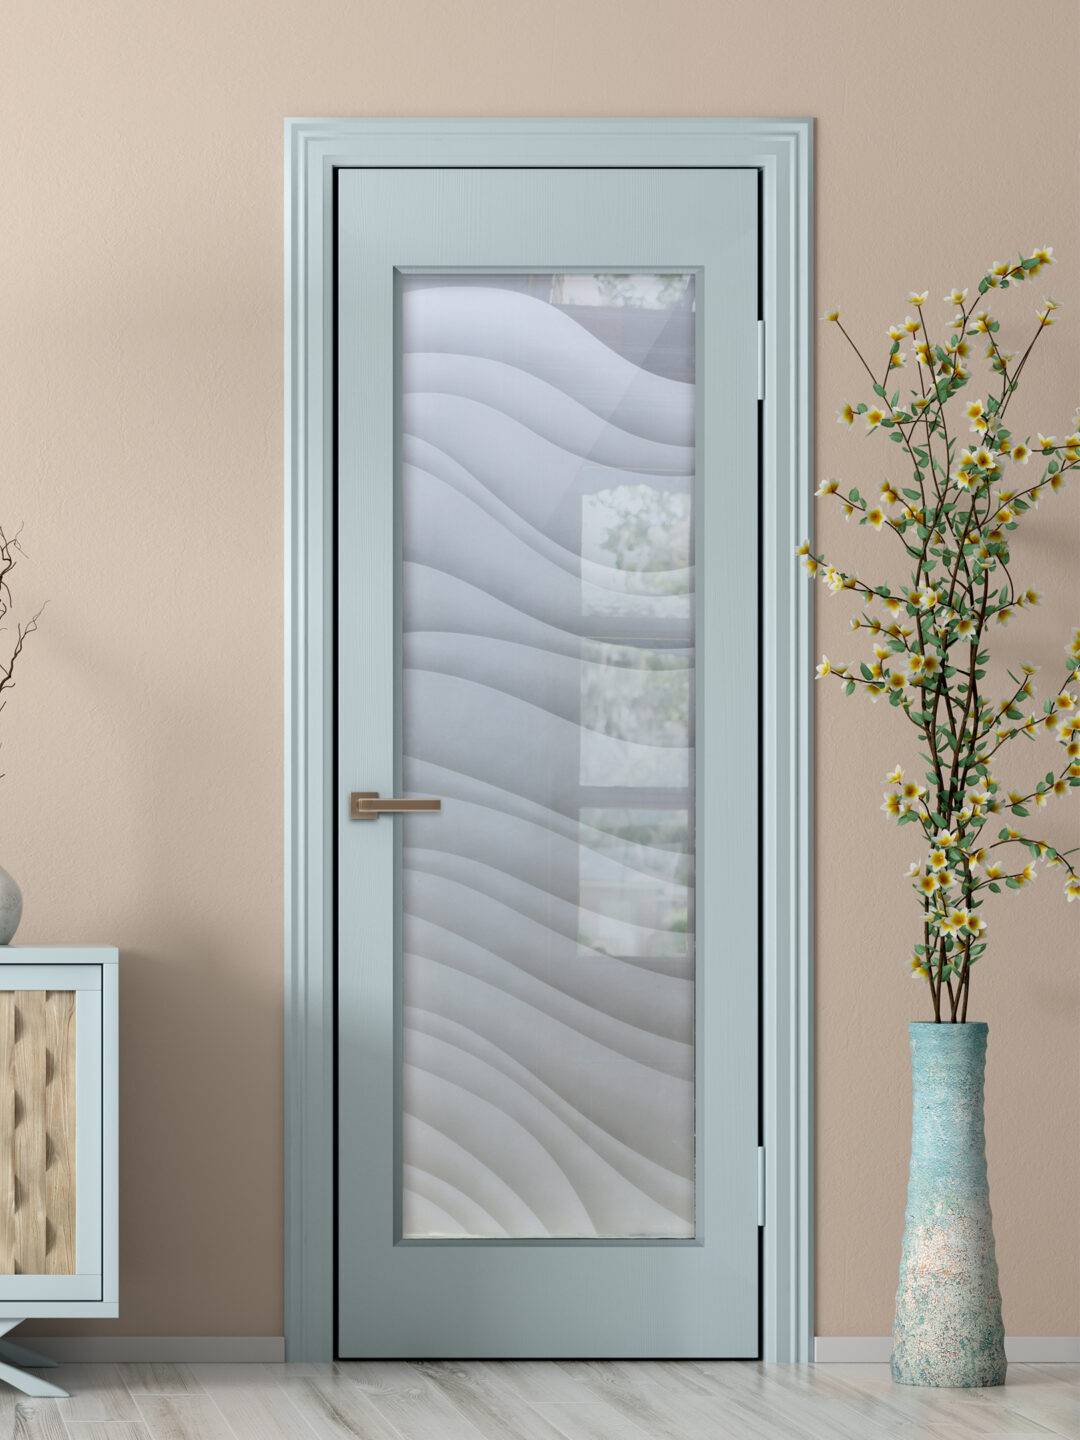 Dreamy Waves Private 2D Frosted Glass Door Insert Modern Decor Entry Door Interior Glass Door Sans Soucie